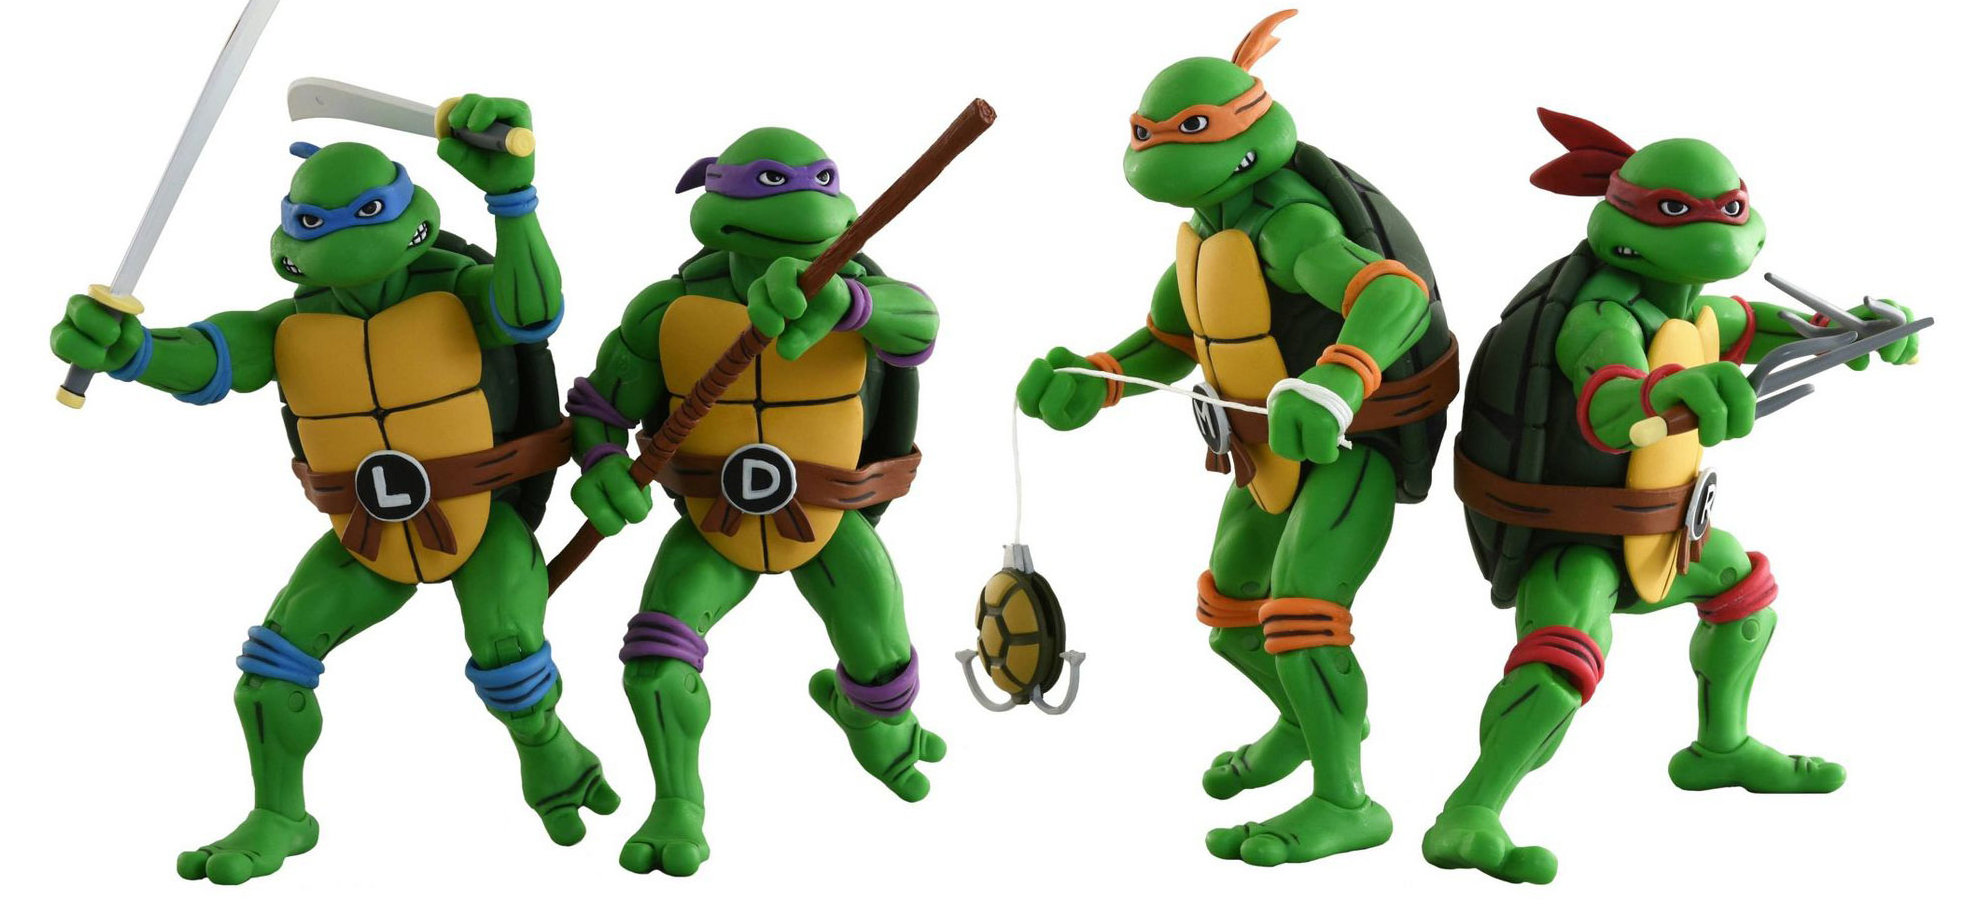 original teenage mutant ninja turtles toys for sale